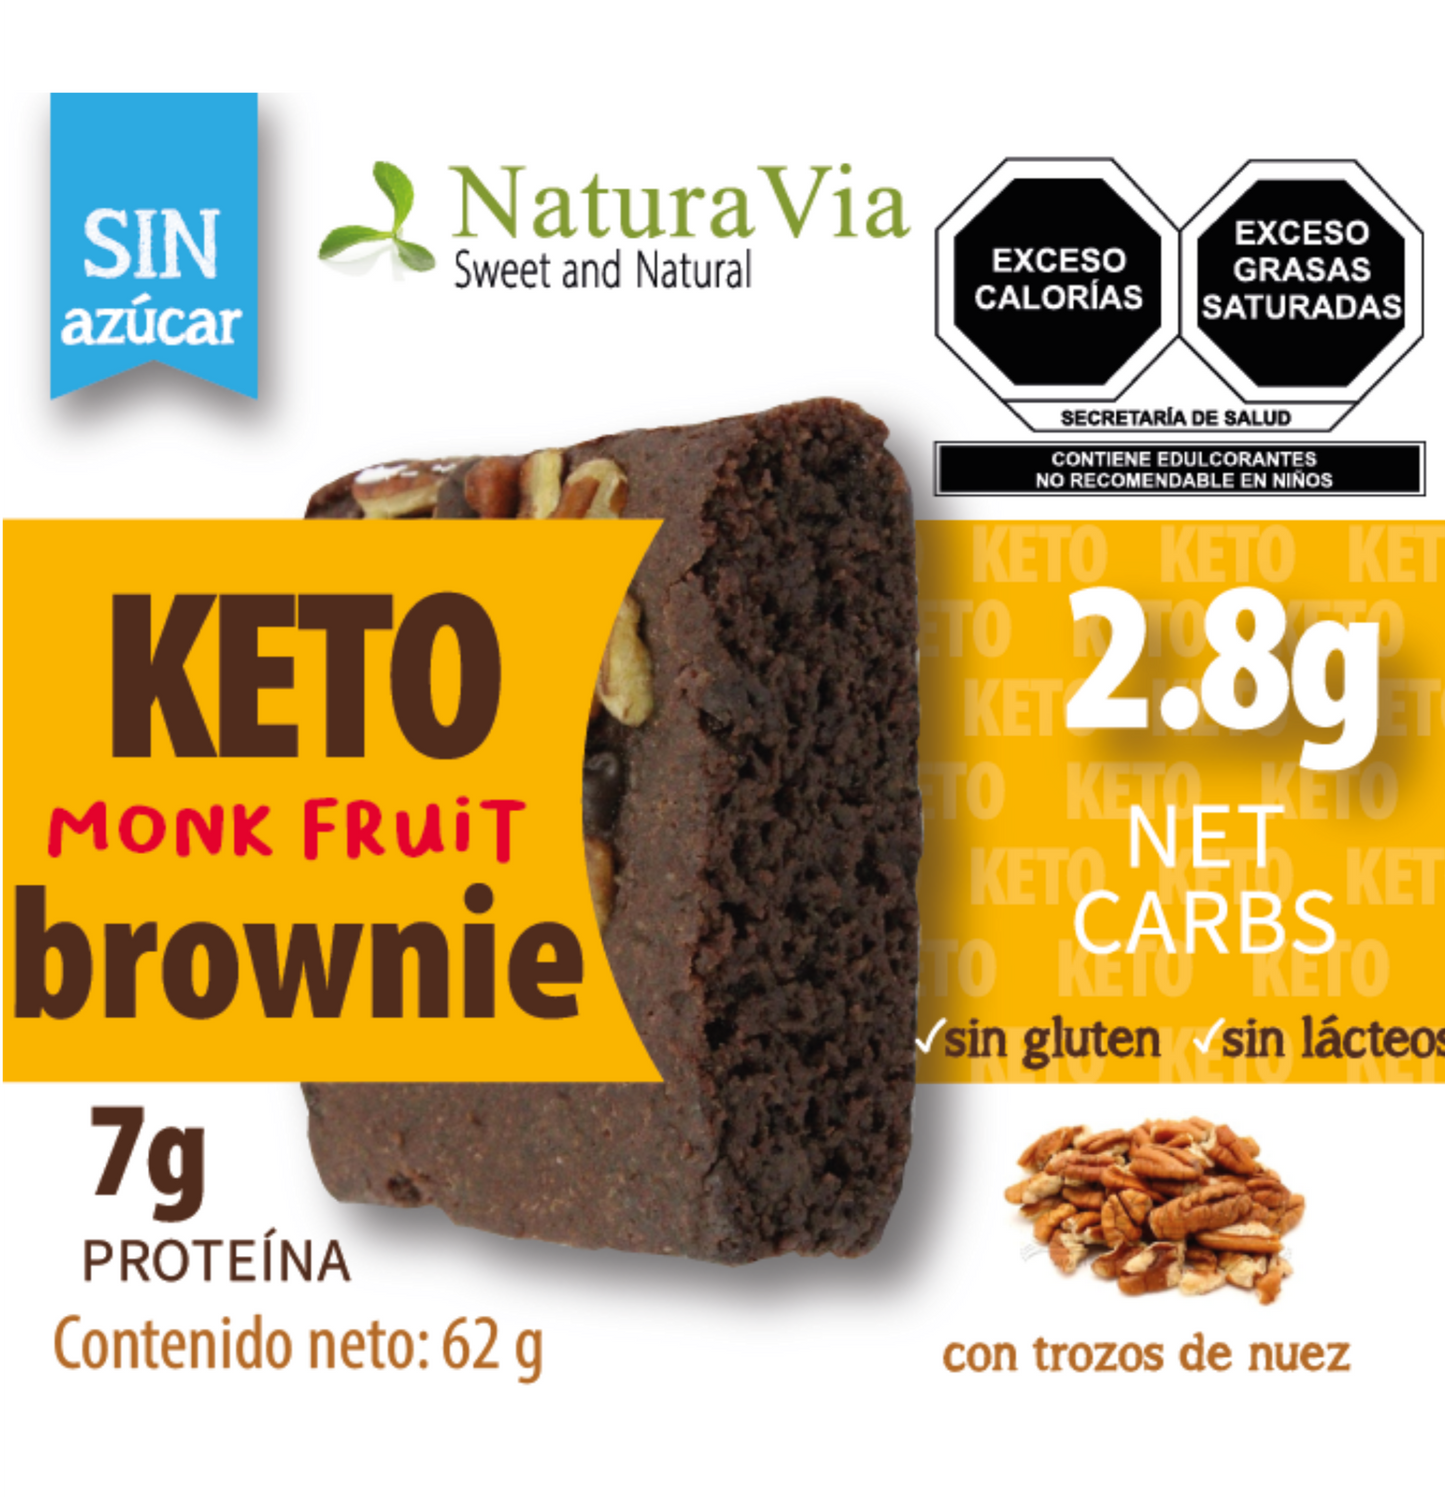 Keto Brownie New Presentation